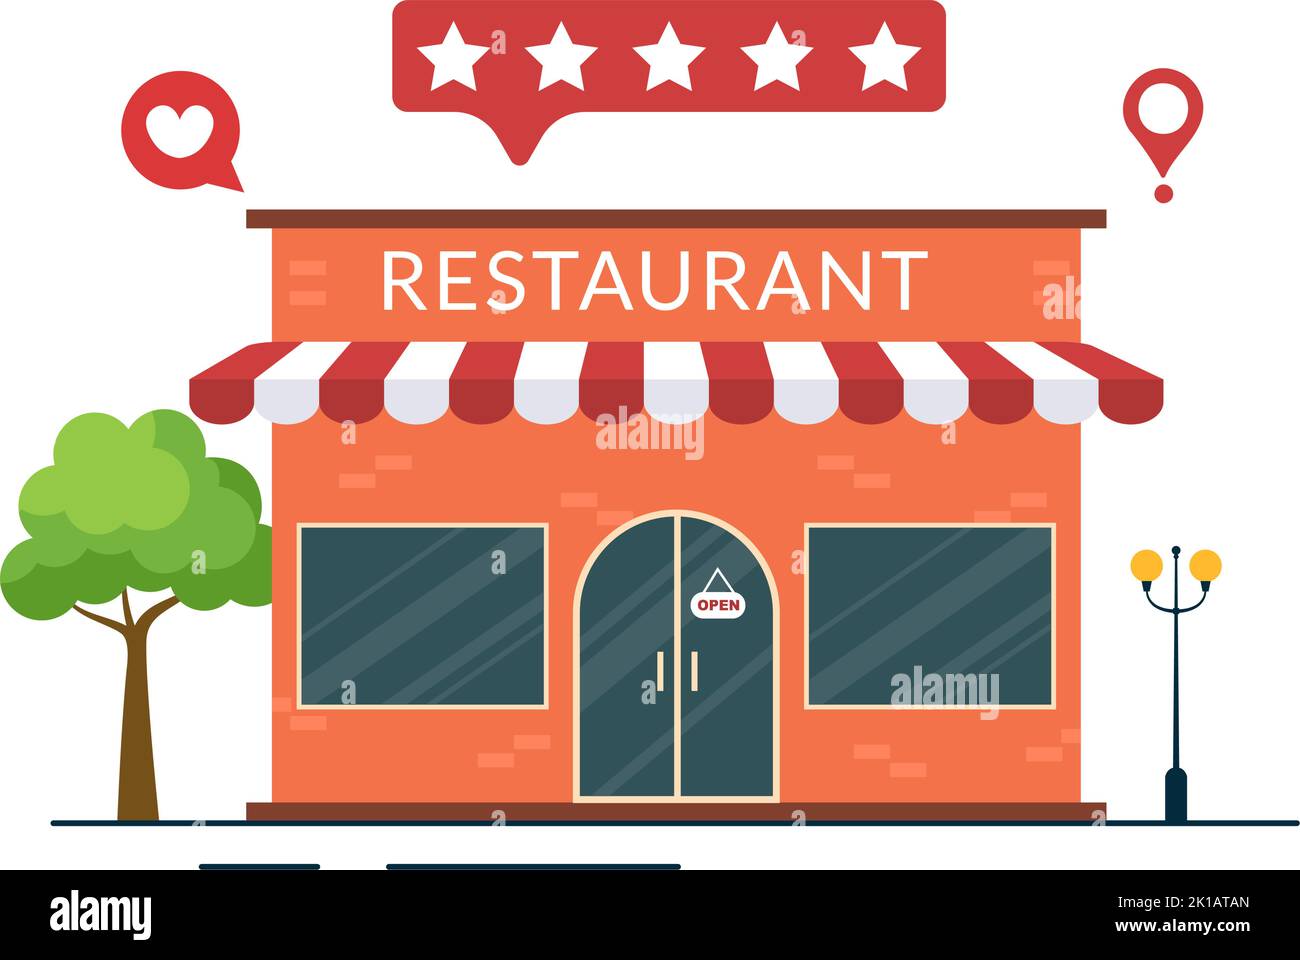 Vorlage zur Bewertung der Restaurantbewertung Handgezeichnete Cartoon-Grafik mit flacher Illustration mit Kundenfeedback, Bewertungsstern, Expertenmeinung und Online-Umfrage Stock Vektor